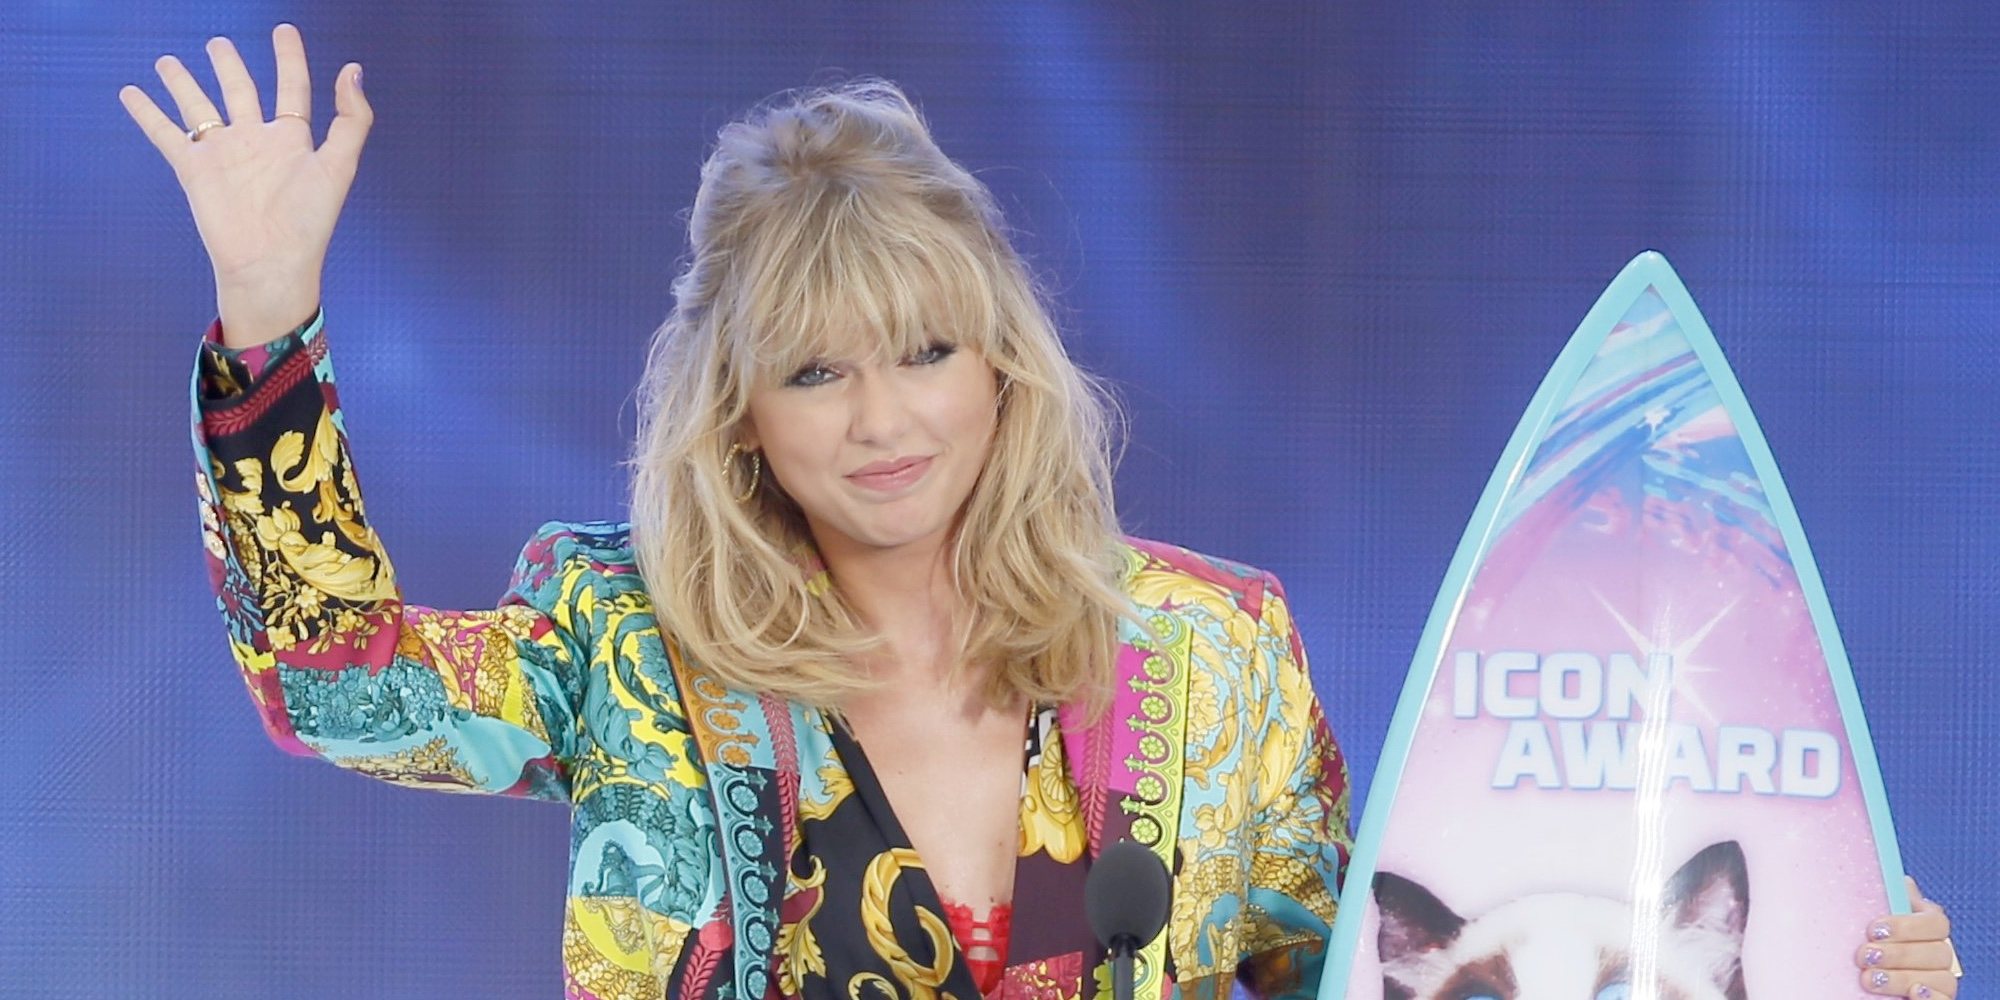 El emotivo mensaje de Taylor Swift para los adolescentes en los Teen Choice Awards 2019